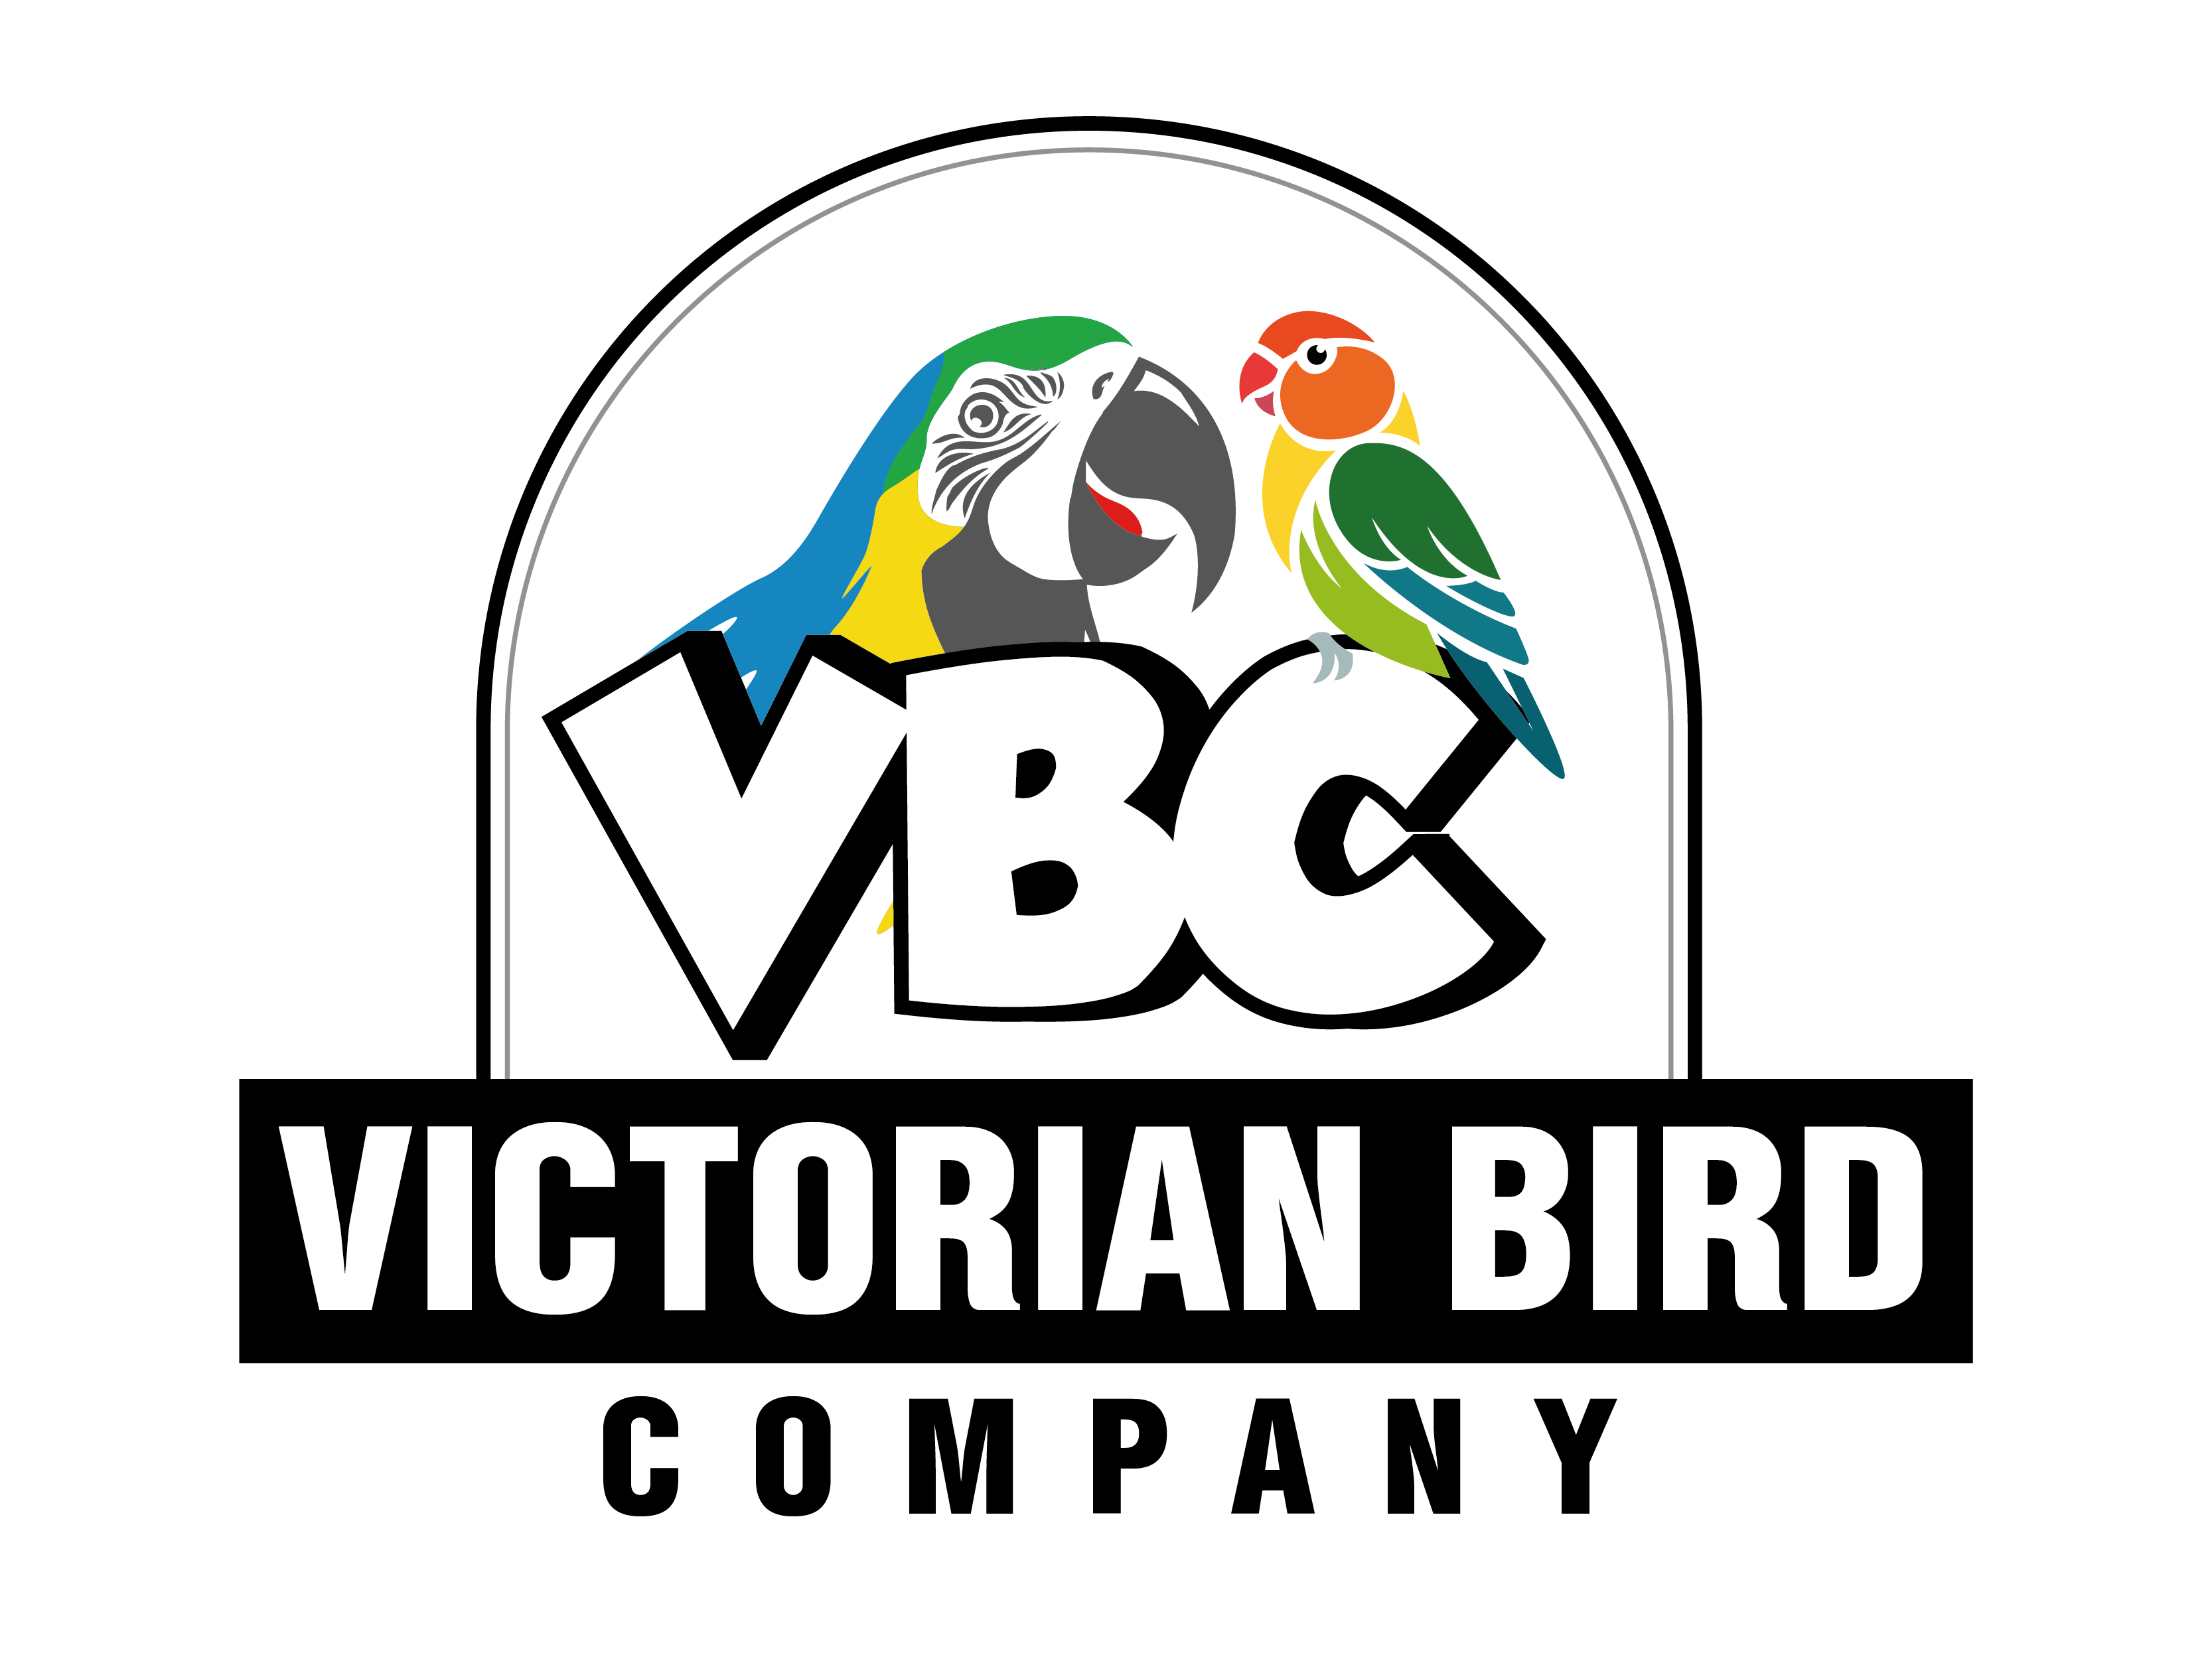 Victorian Bird